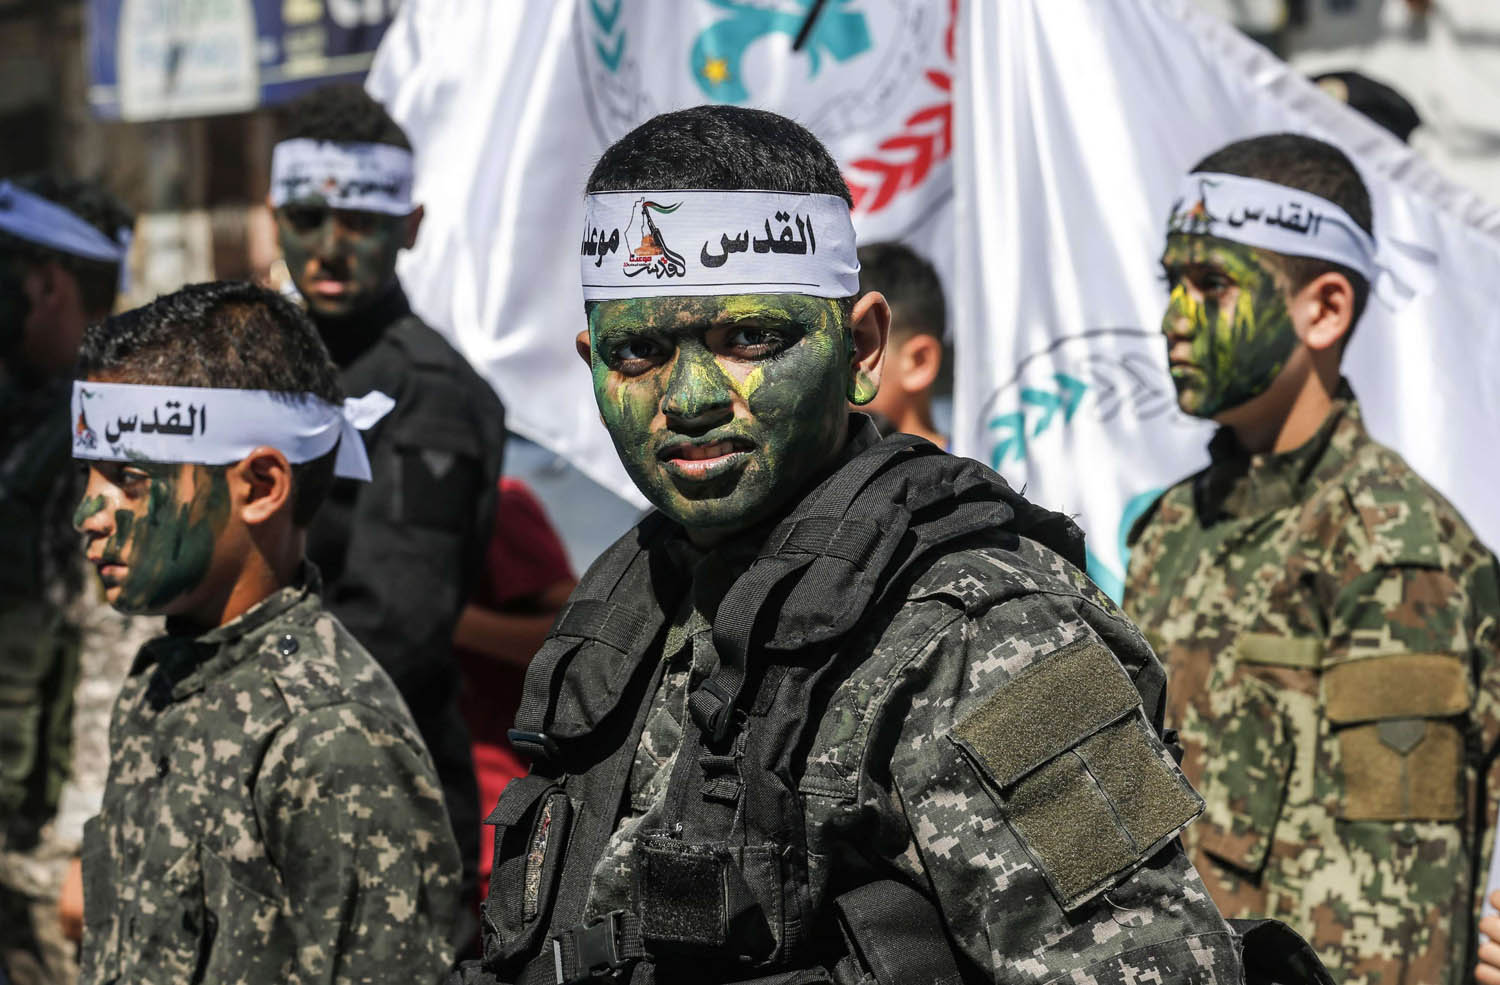 صبيان فلسطينيون يرتدون أزياء عسكرية في استعراض في غزة